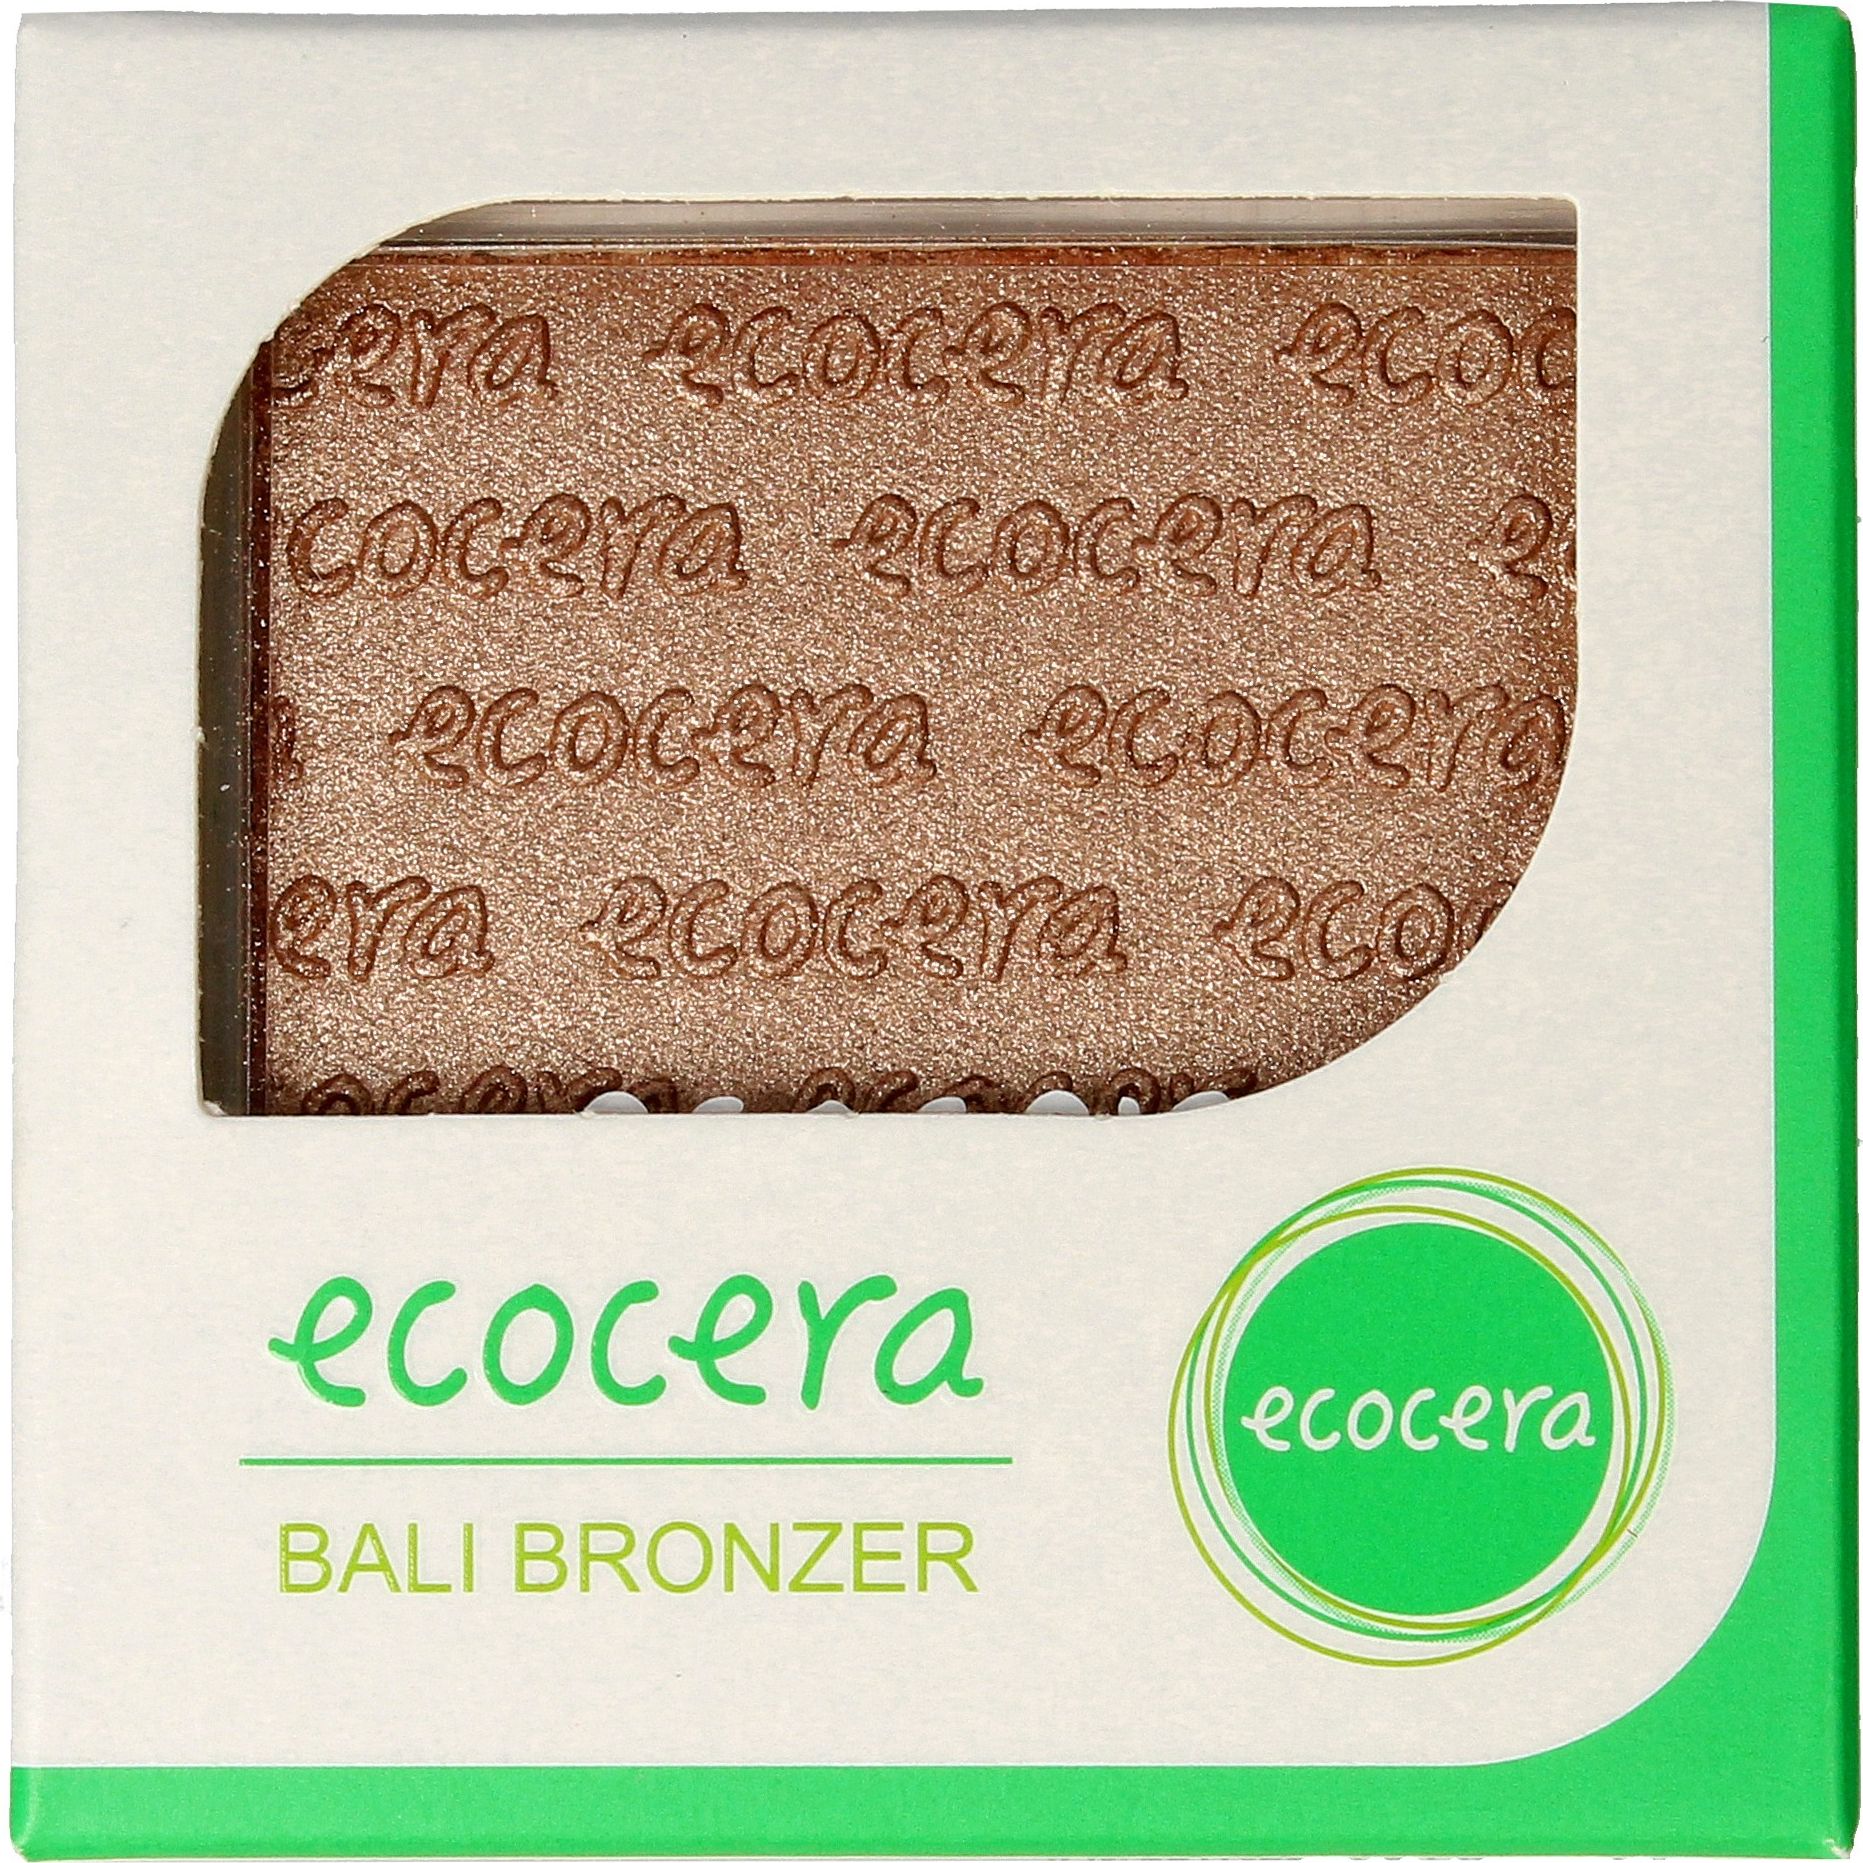 Pudra bronzanta Bali, Ecocera, Vegan, 10 g